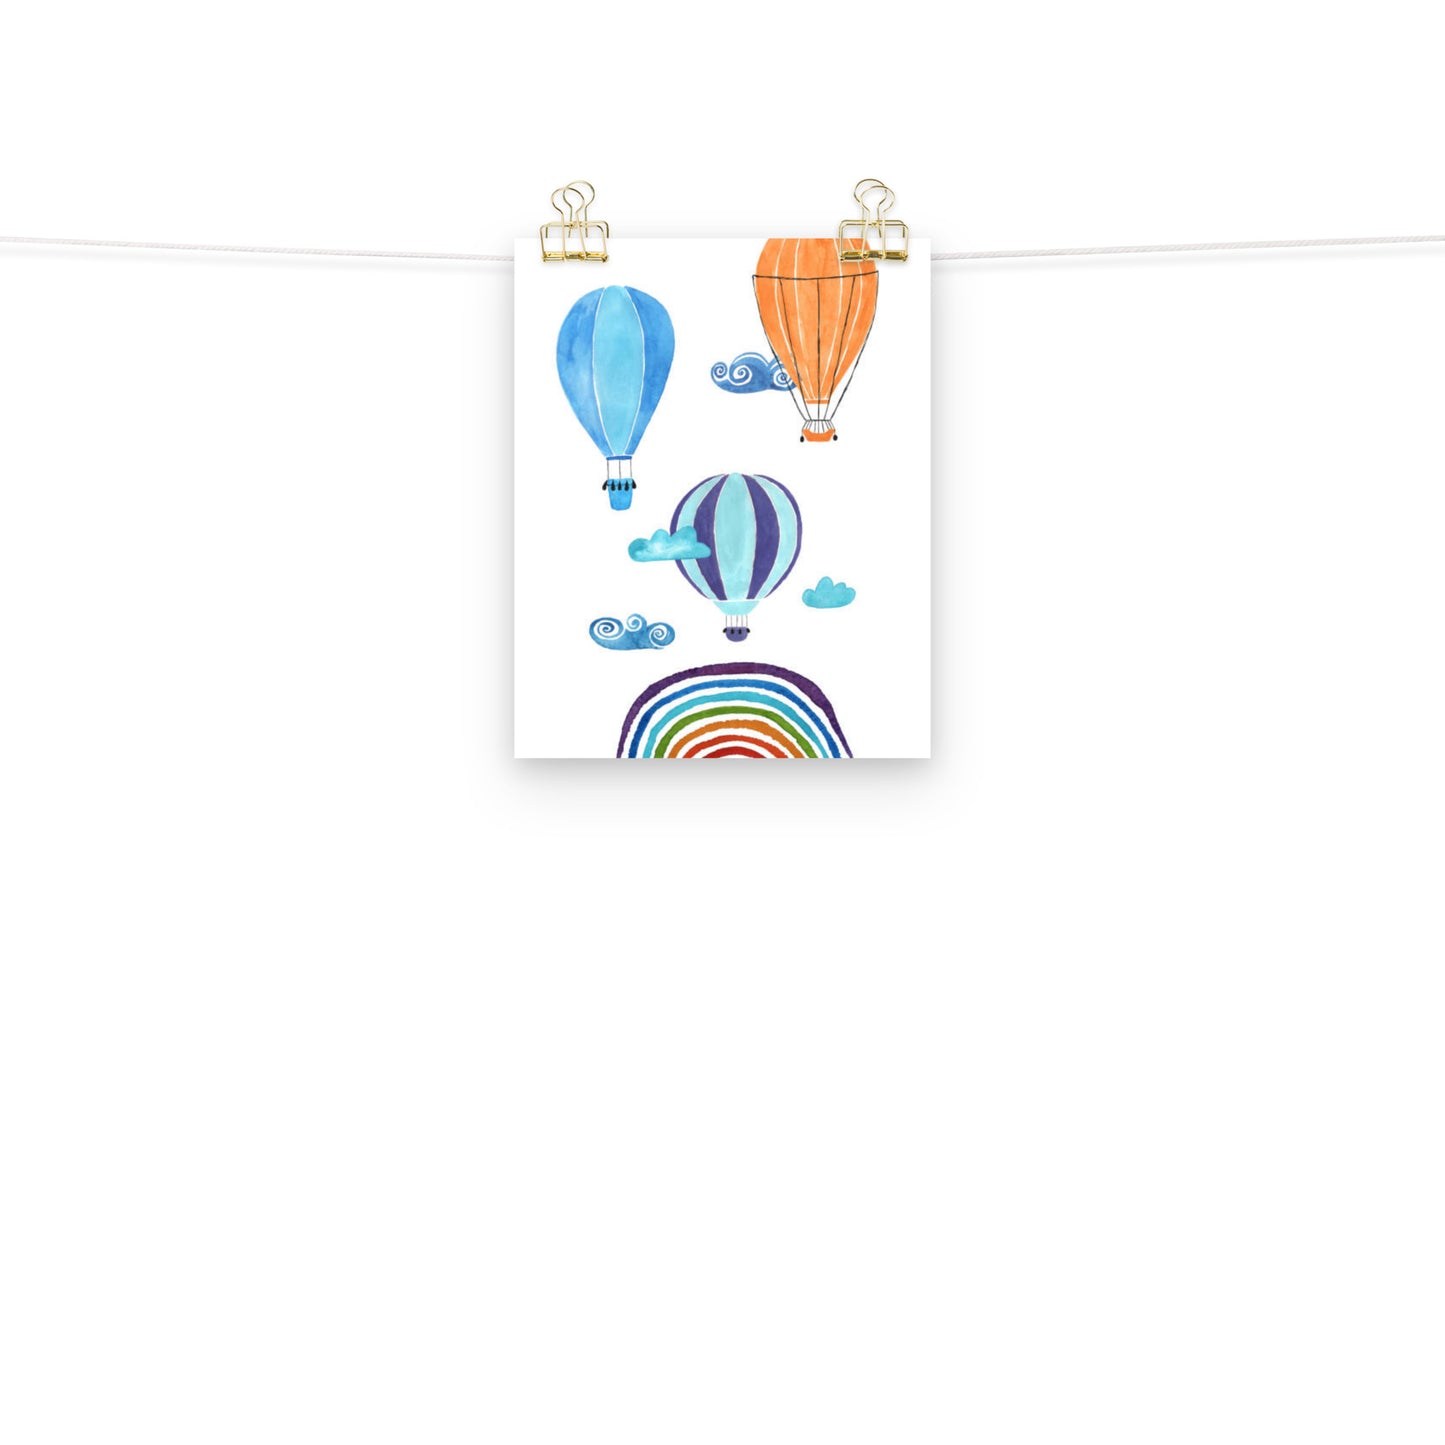 Hot Air Balloons Poster